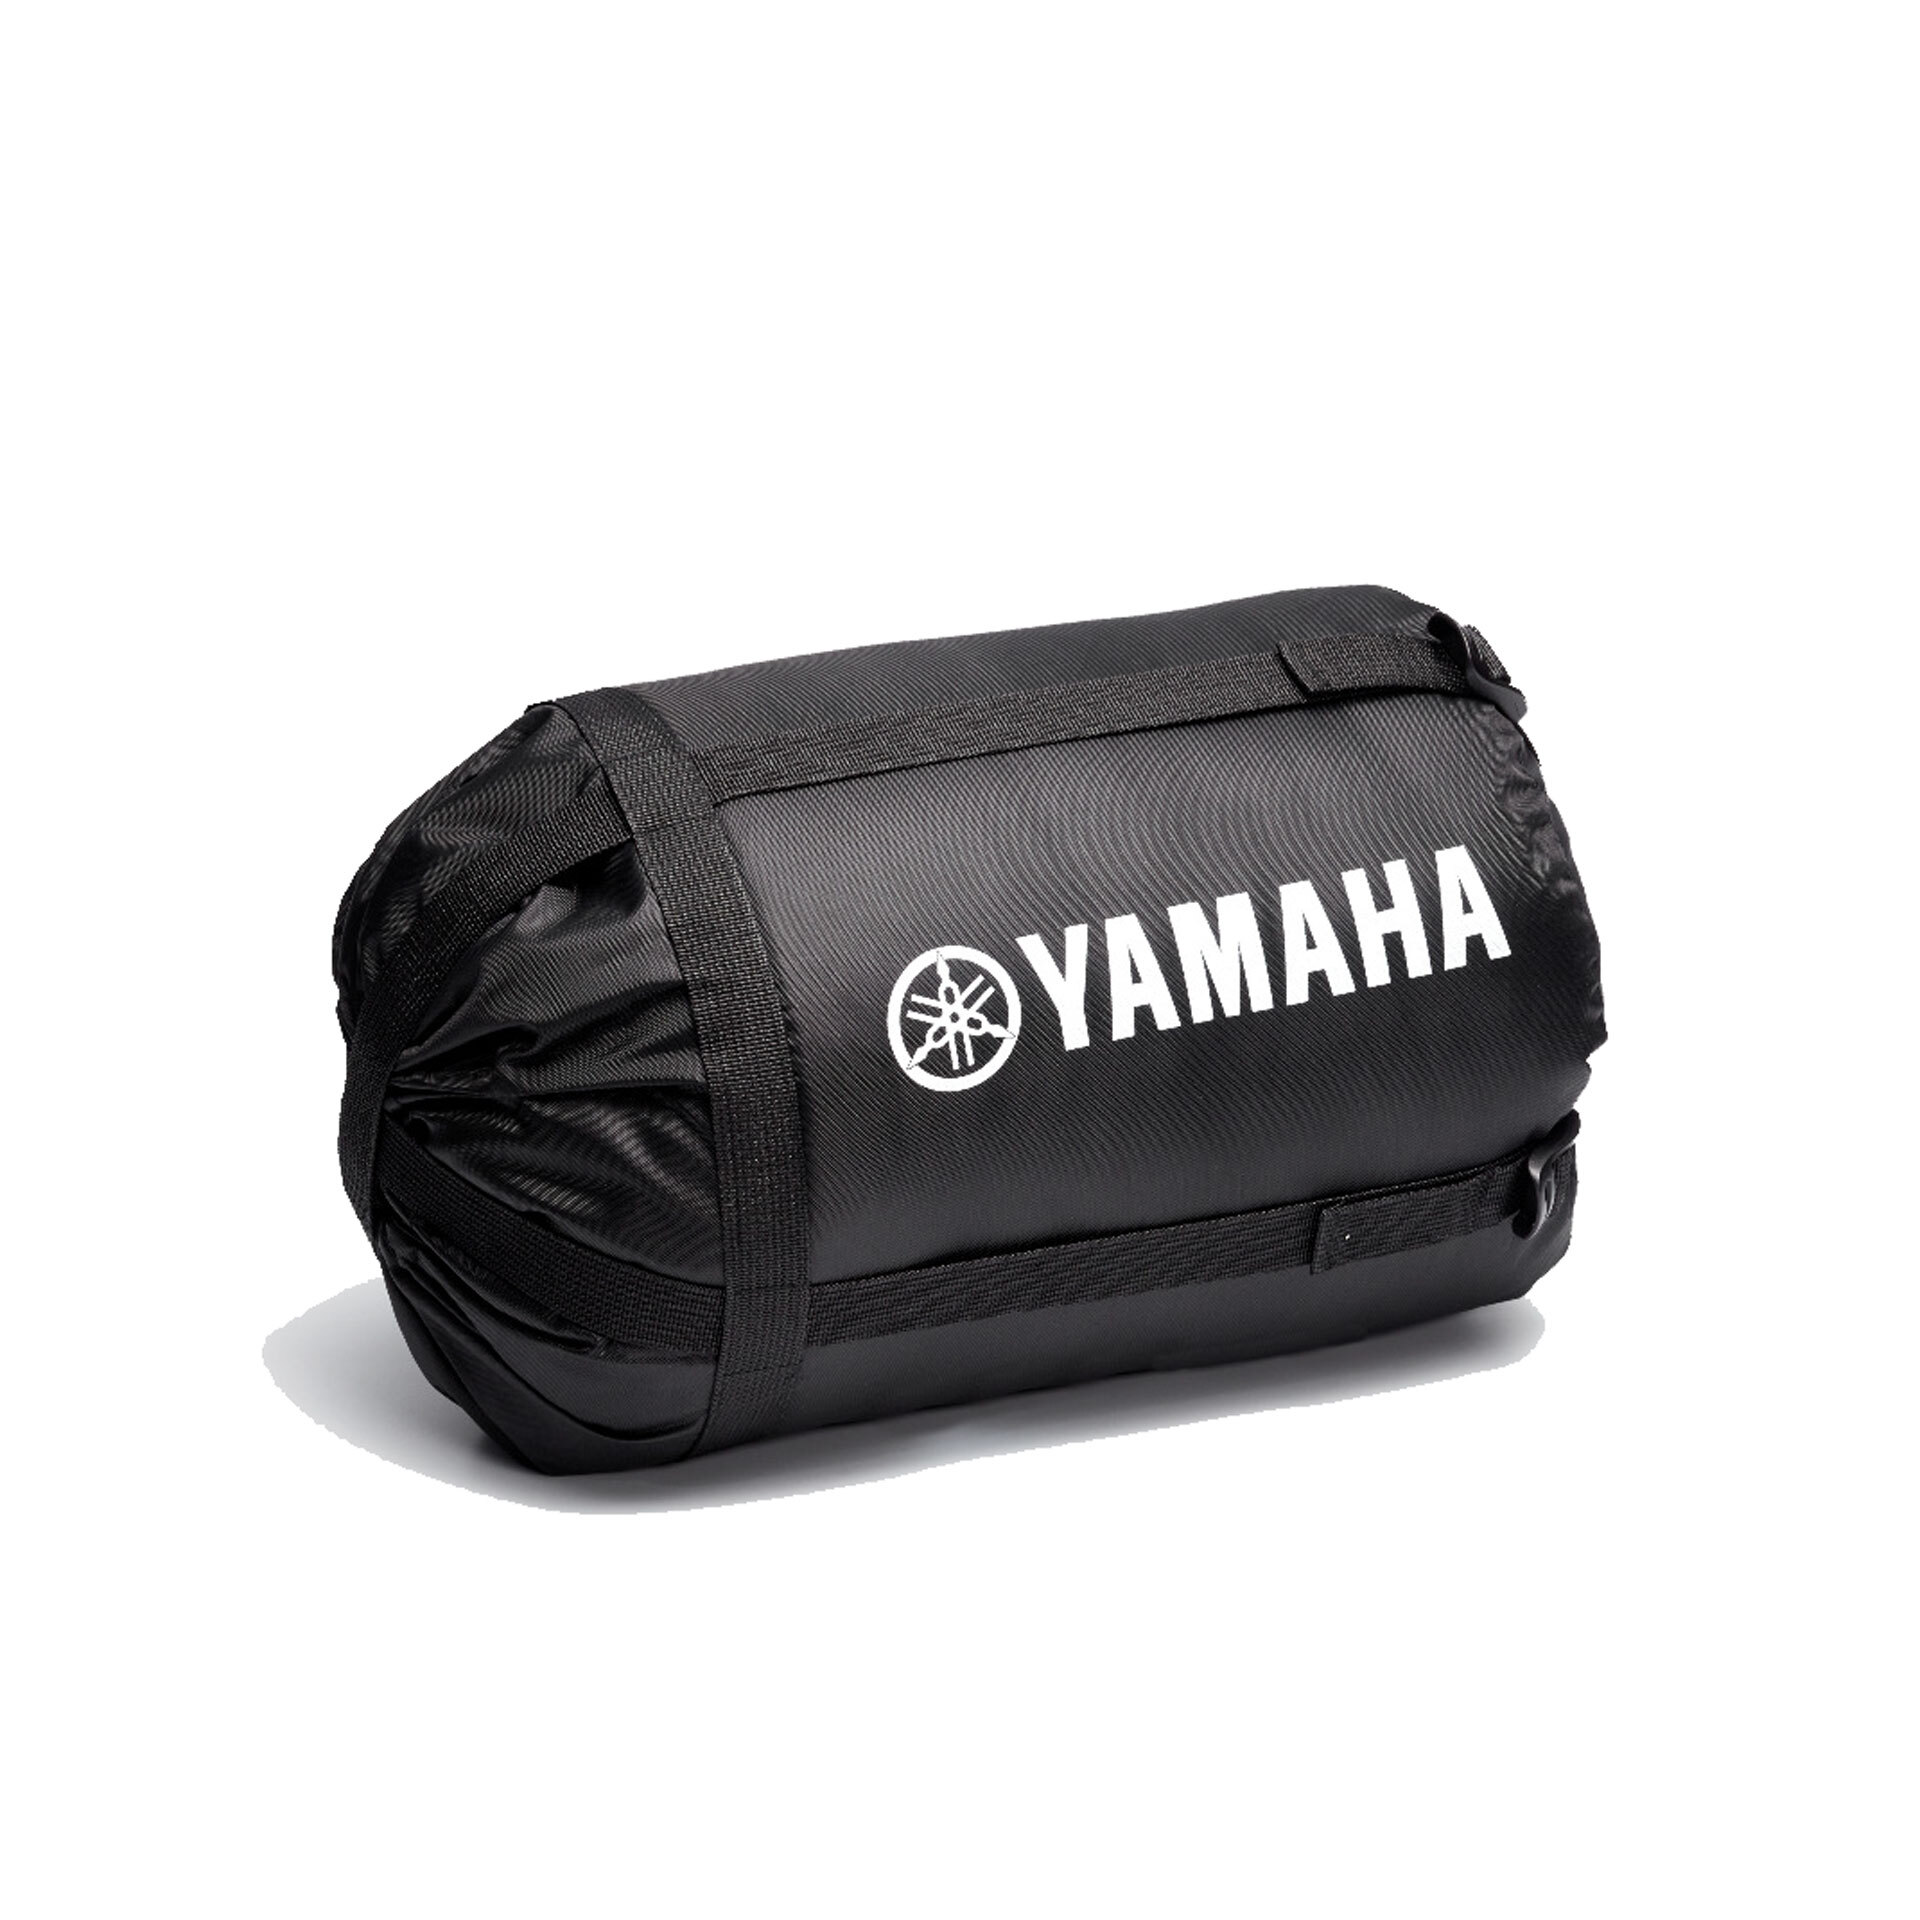 Yamaha Tenere 700 Sleeping Bag